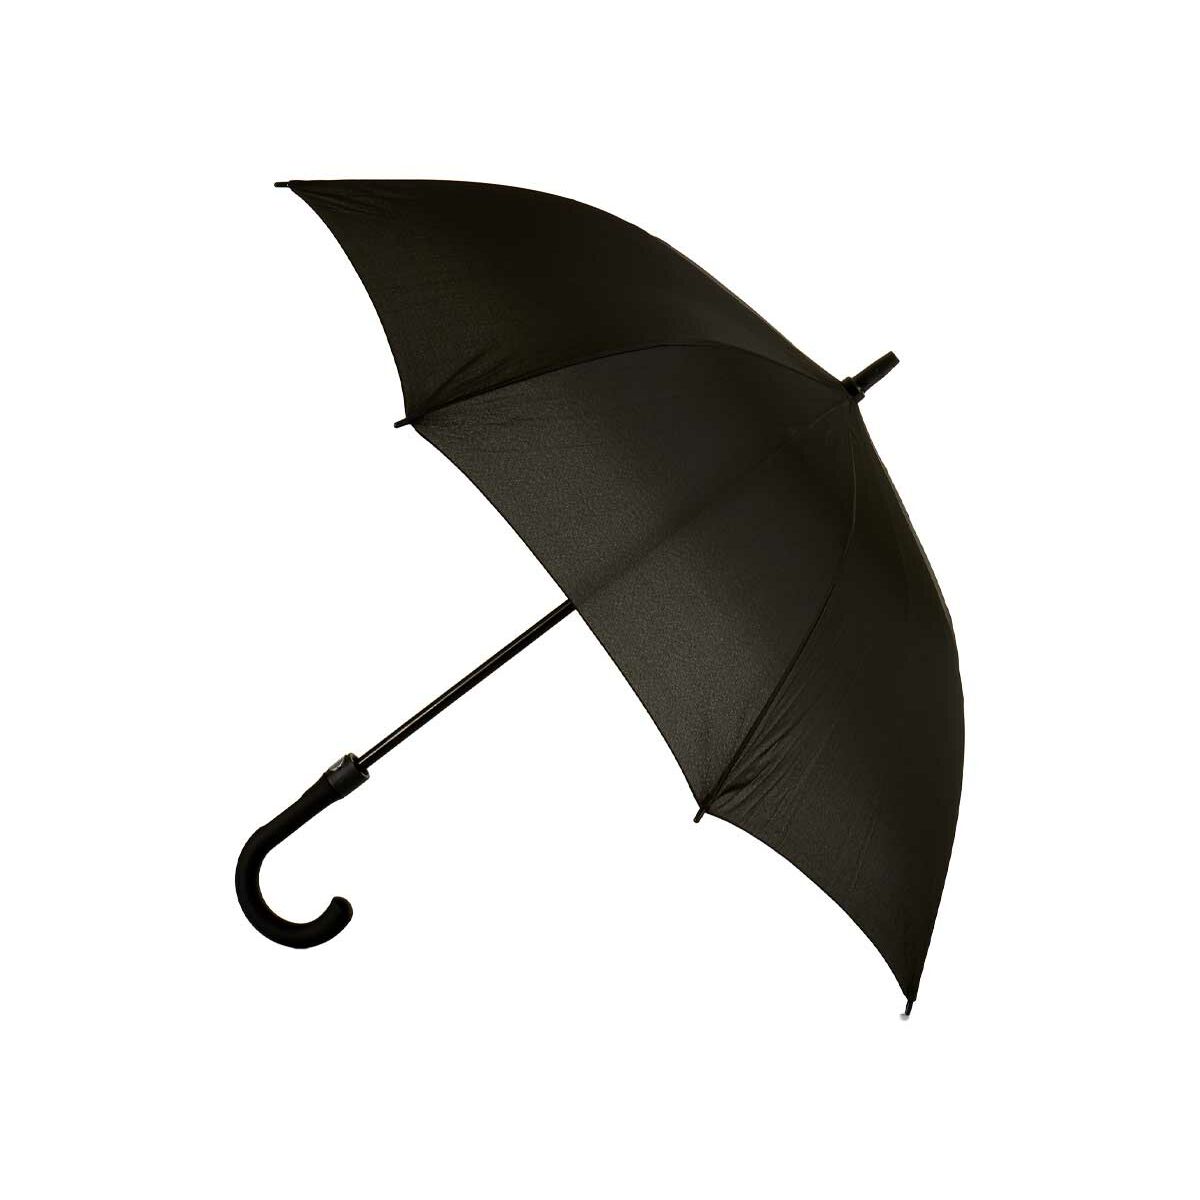 Paraplu Zwart Metaal Stof 100 x 100 x 84 cm (24 Stuks)